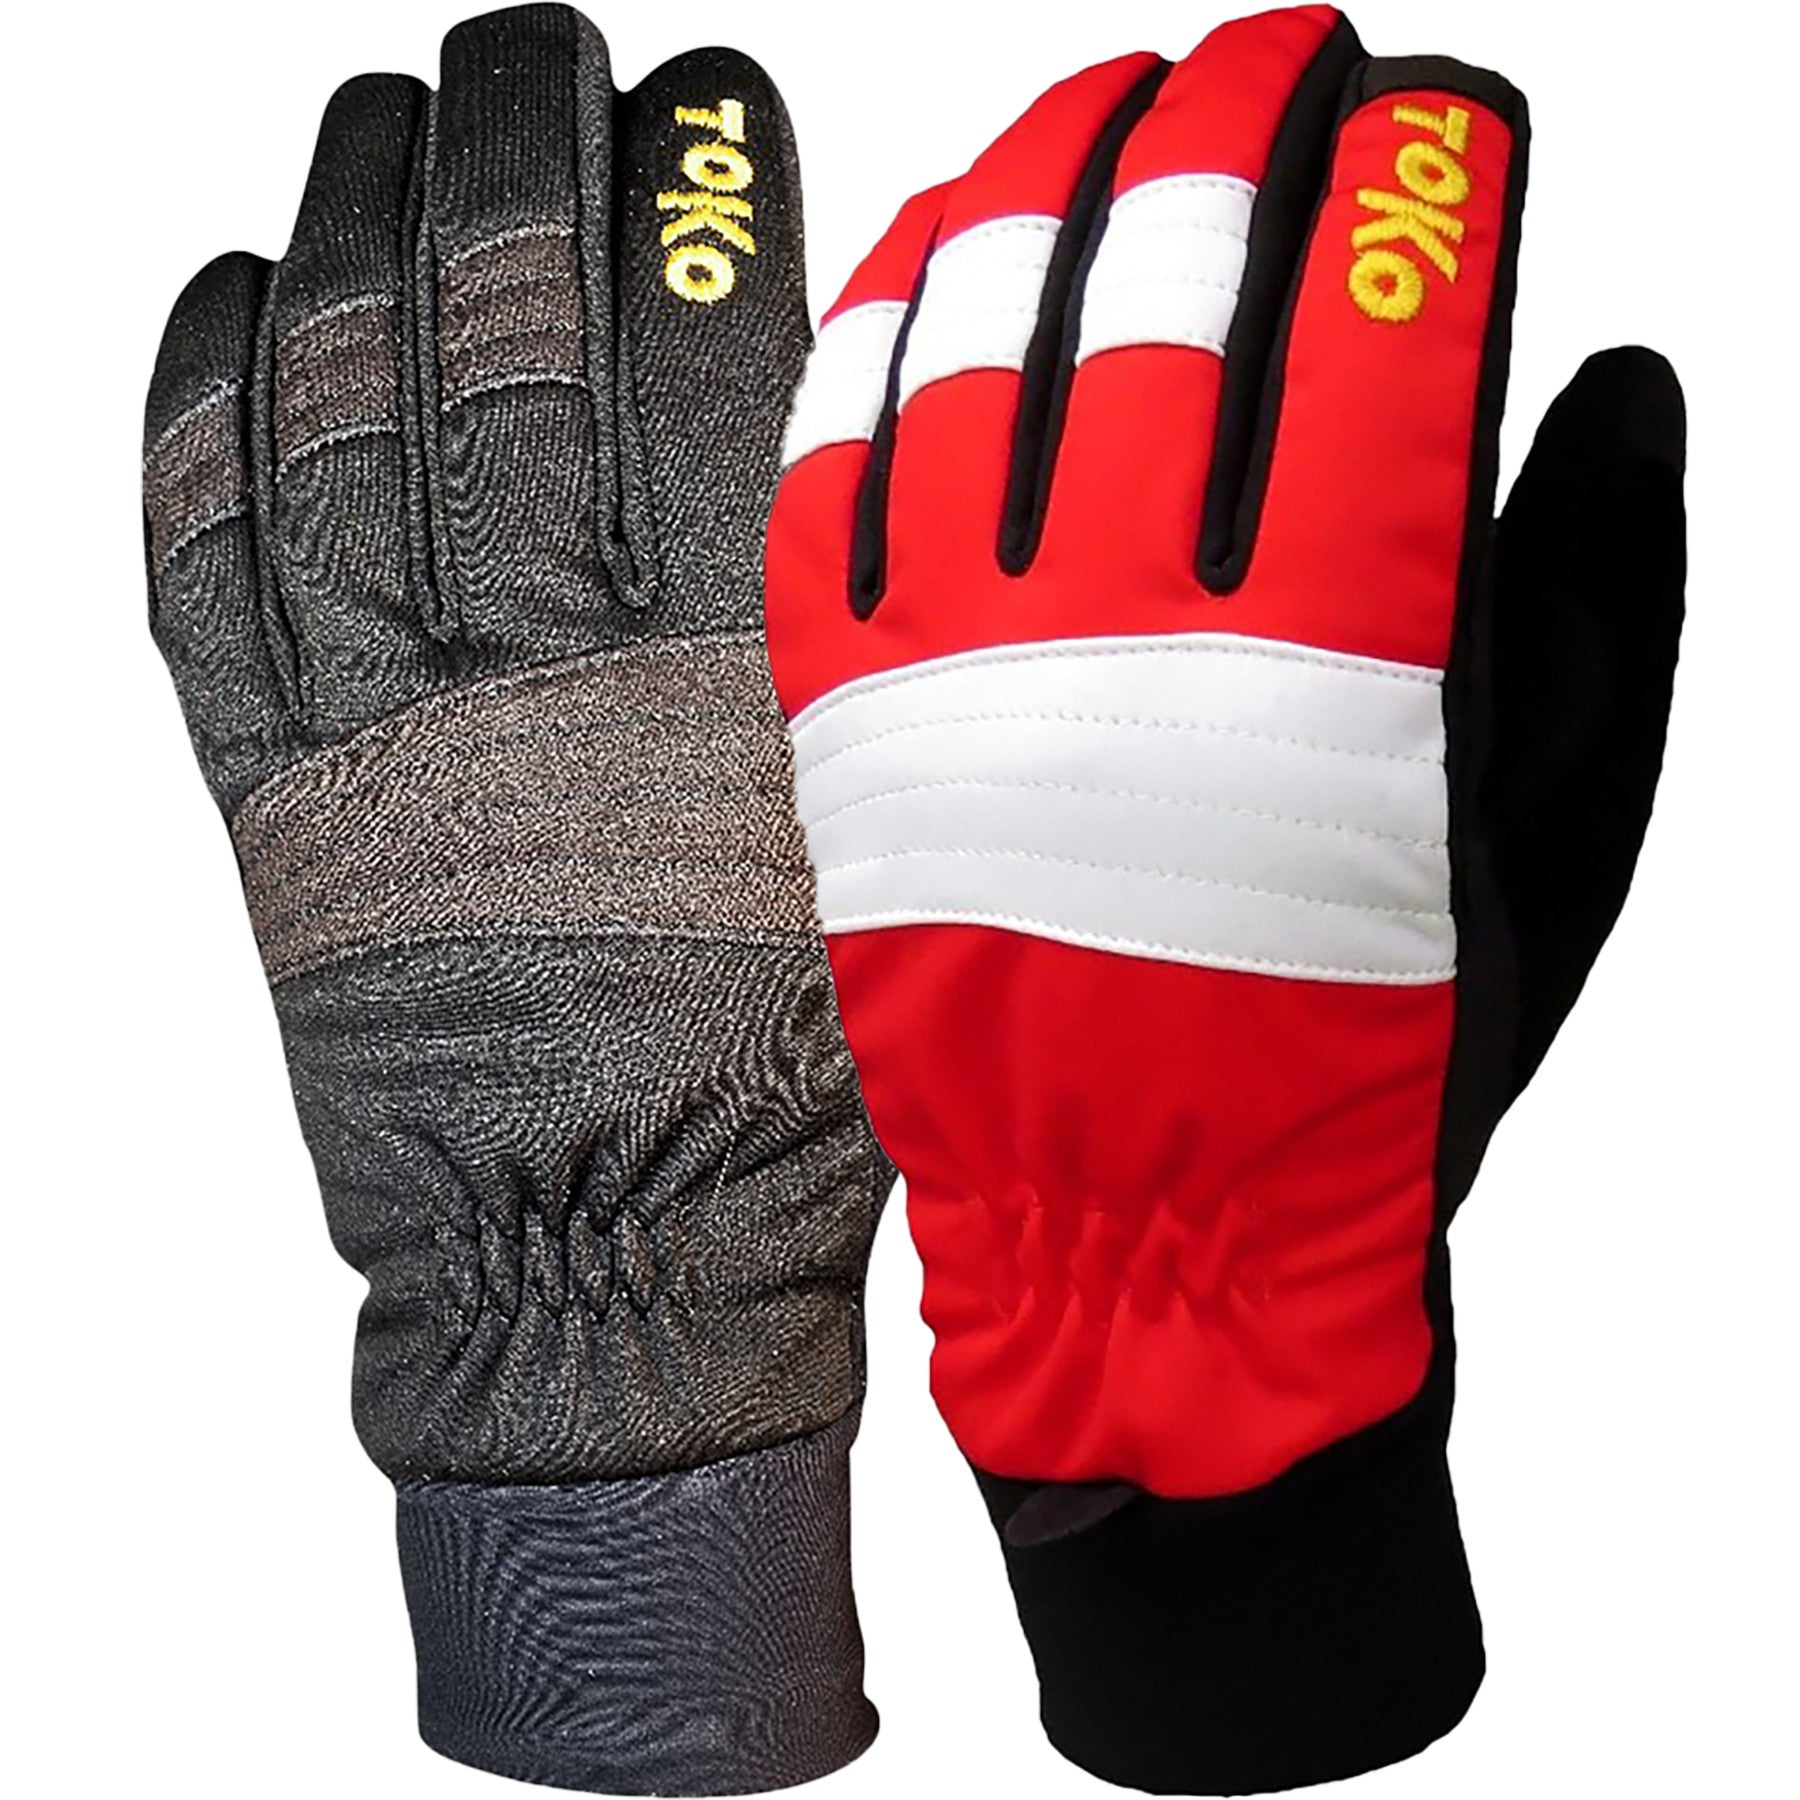 Toko Thermo Plus Glove